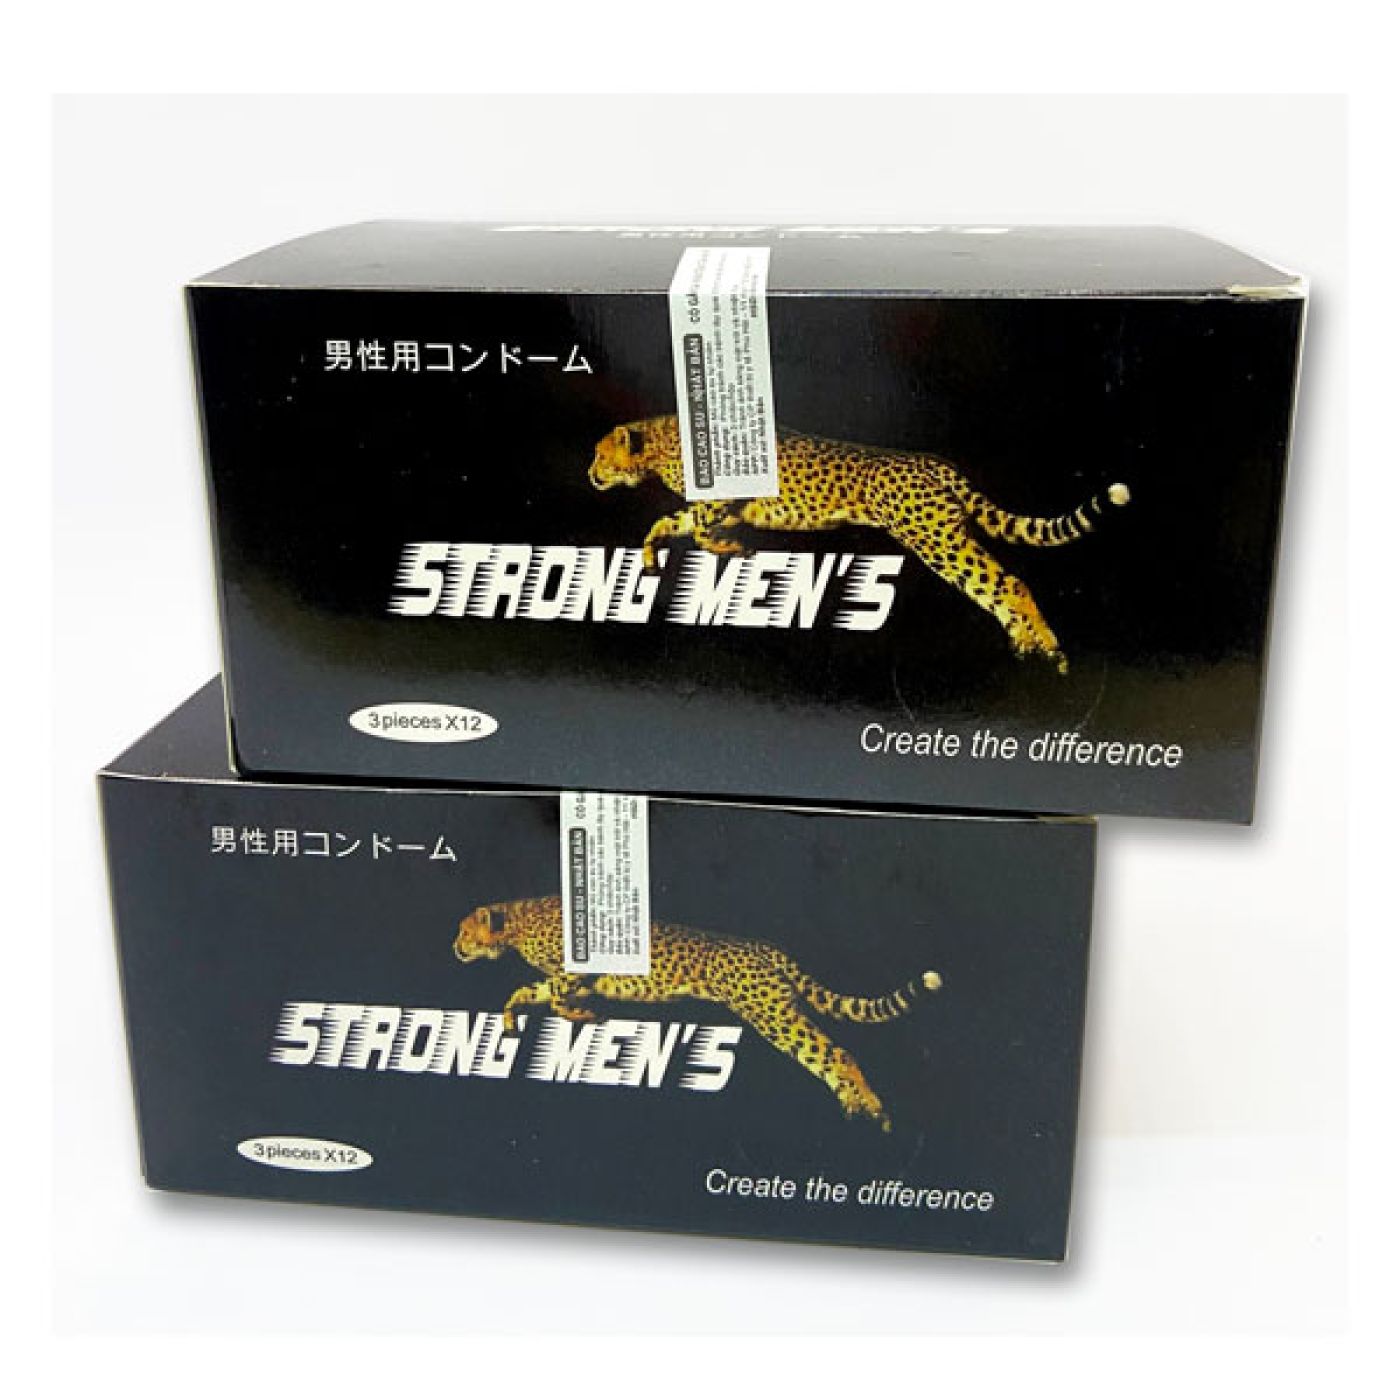 Bao cao su Nhật Bản Strongmen's có gai, siêu mỏng, hàng chính hãng, hộp 3c/12c/36c